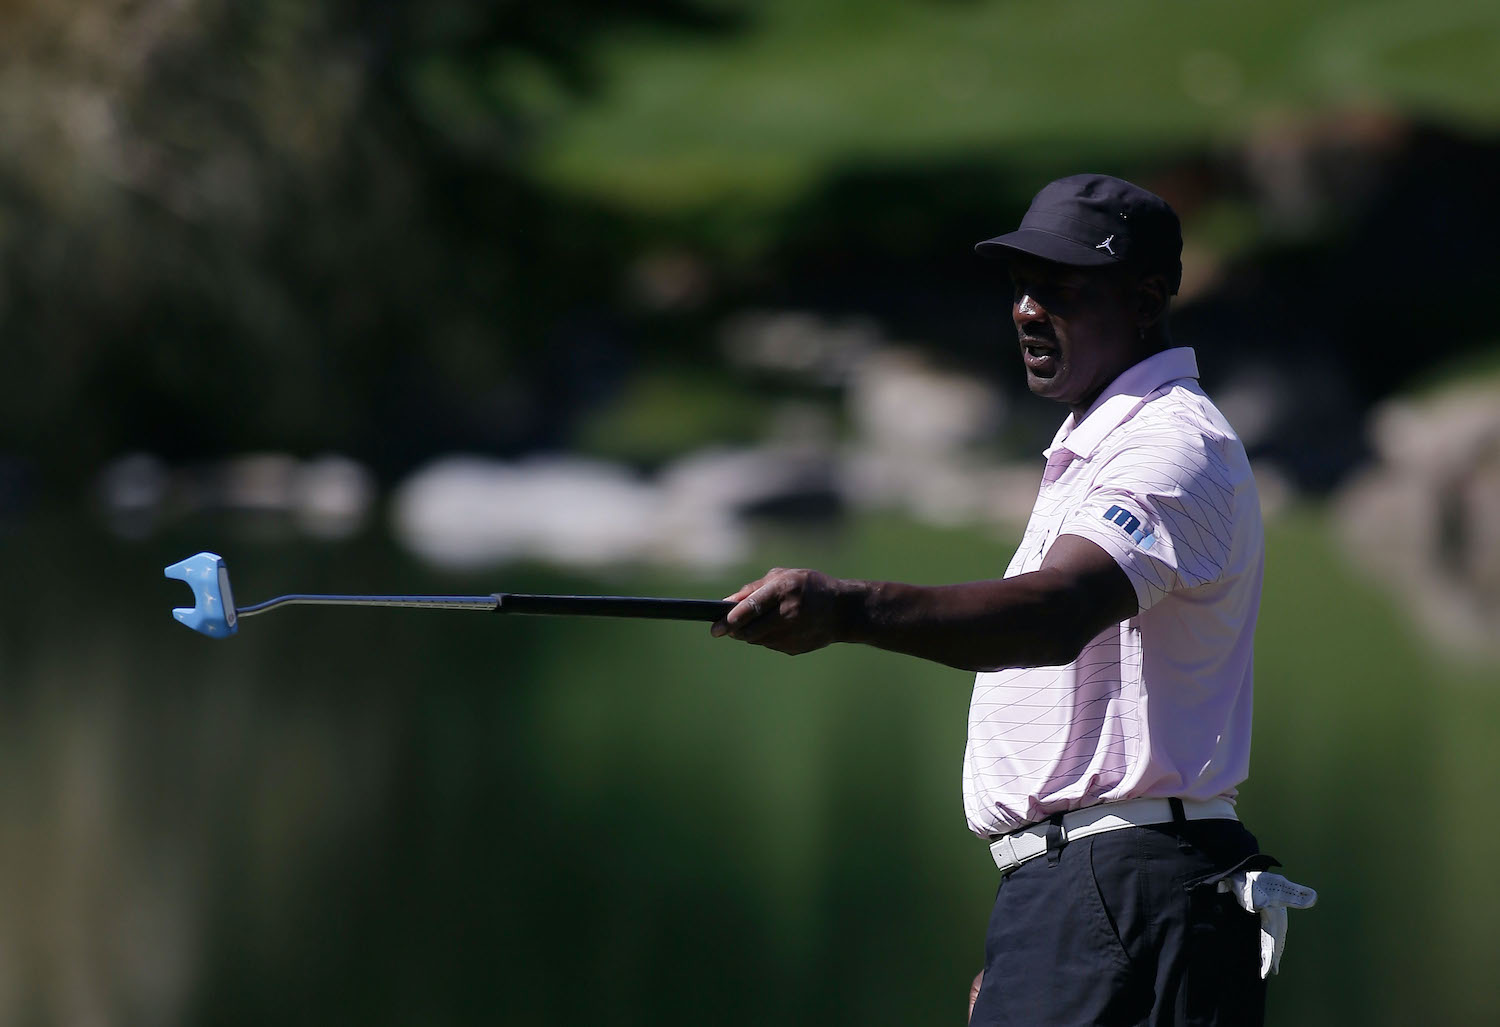 NBA legend Michael Jordan lines up a putt during a golf tournament.